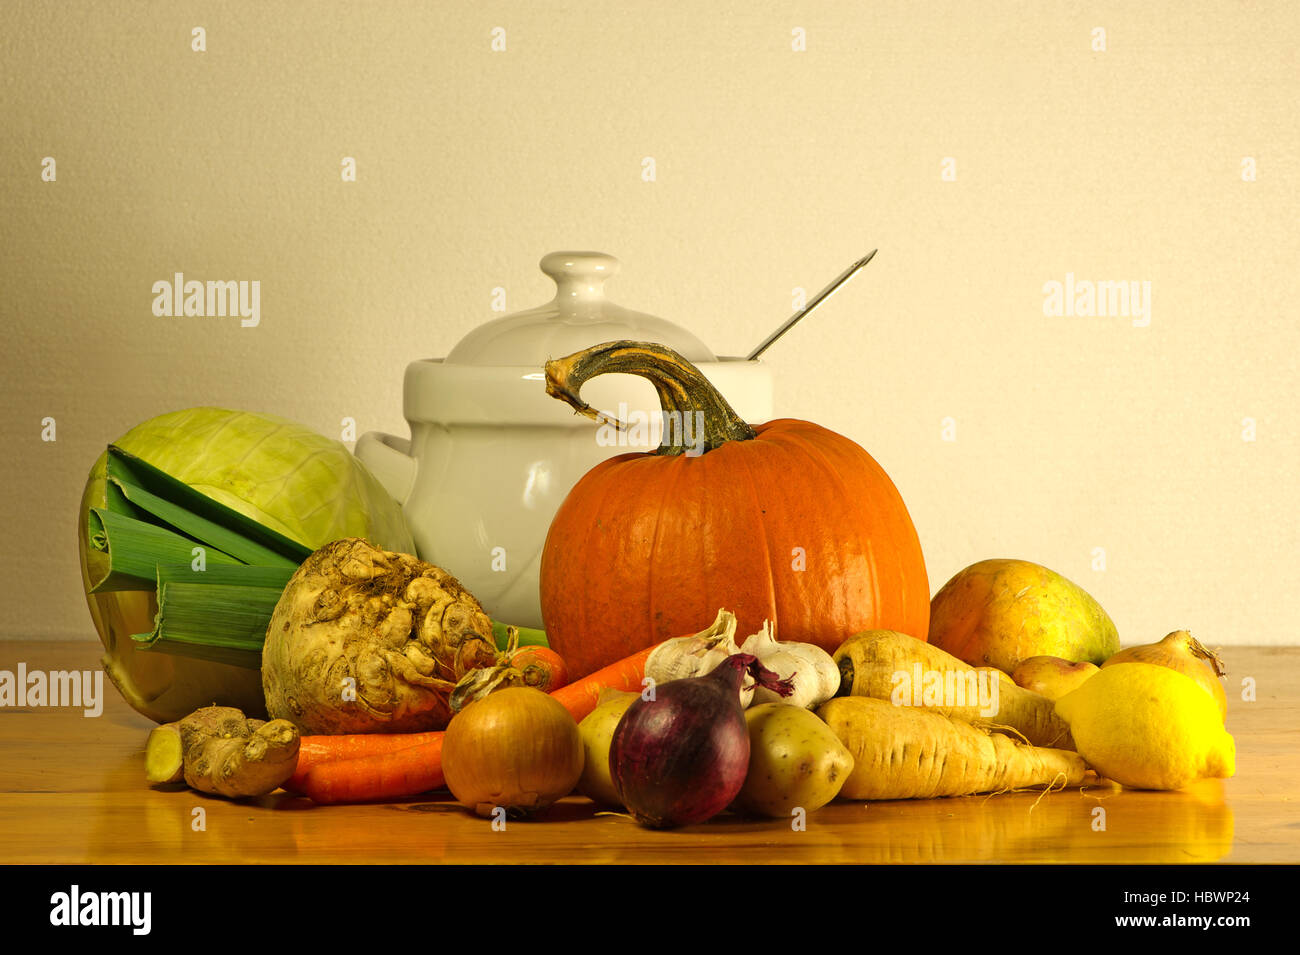 La beauté de l'automne comme une nature morte avec de la soupe de légumes et une soupière sur une table en bois Banque D'Images